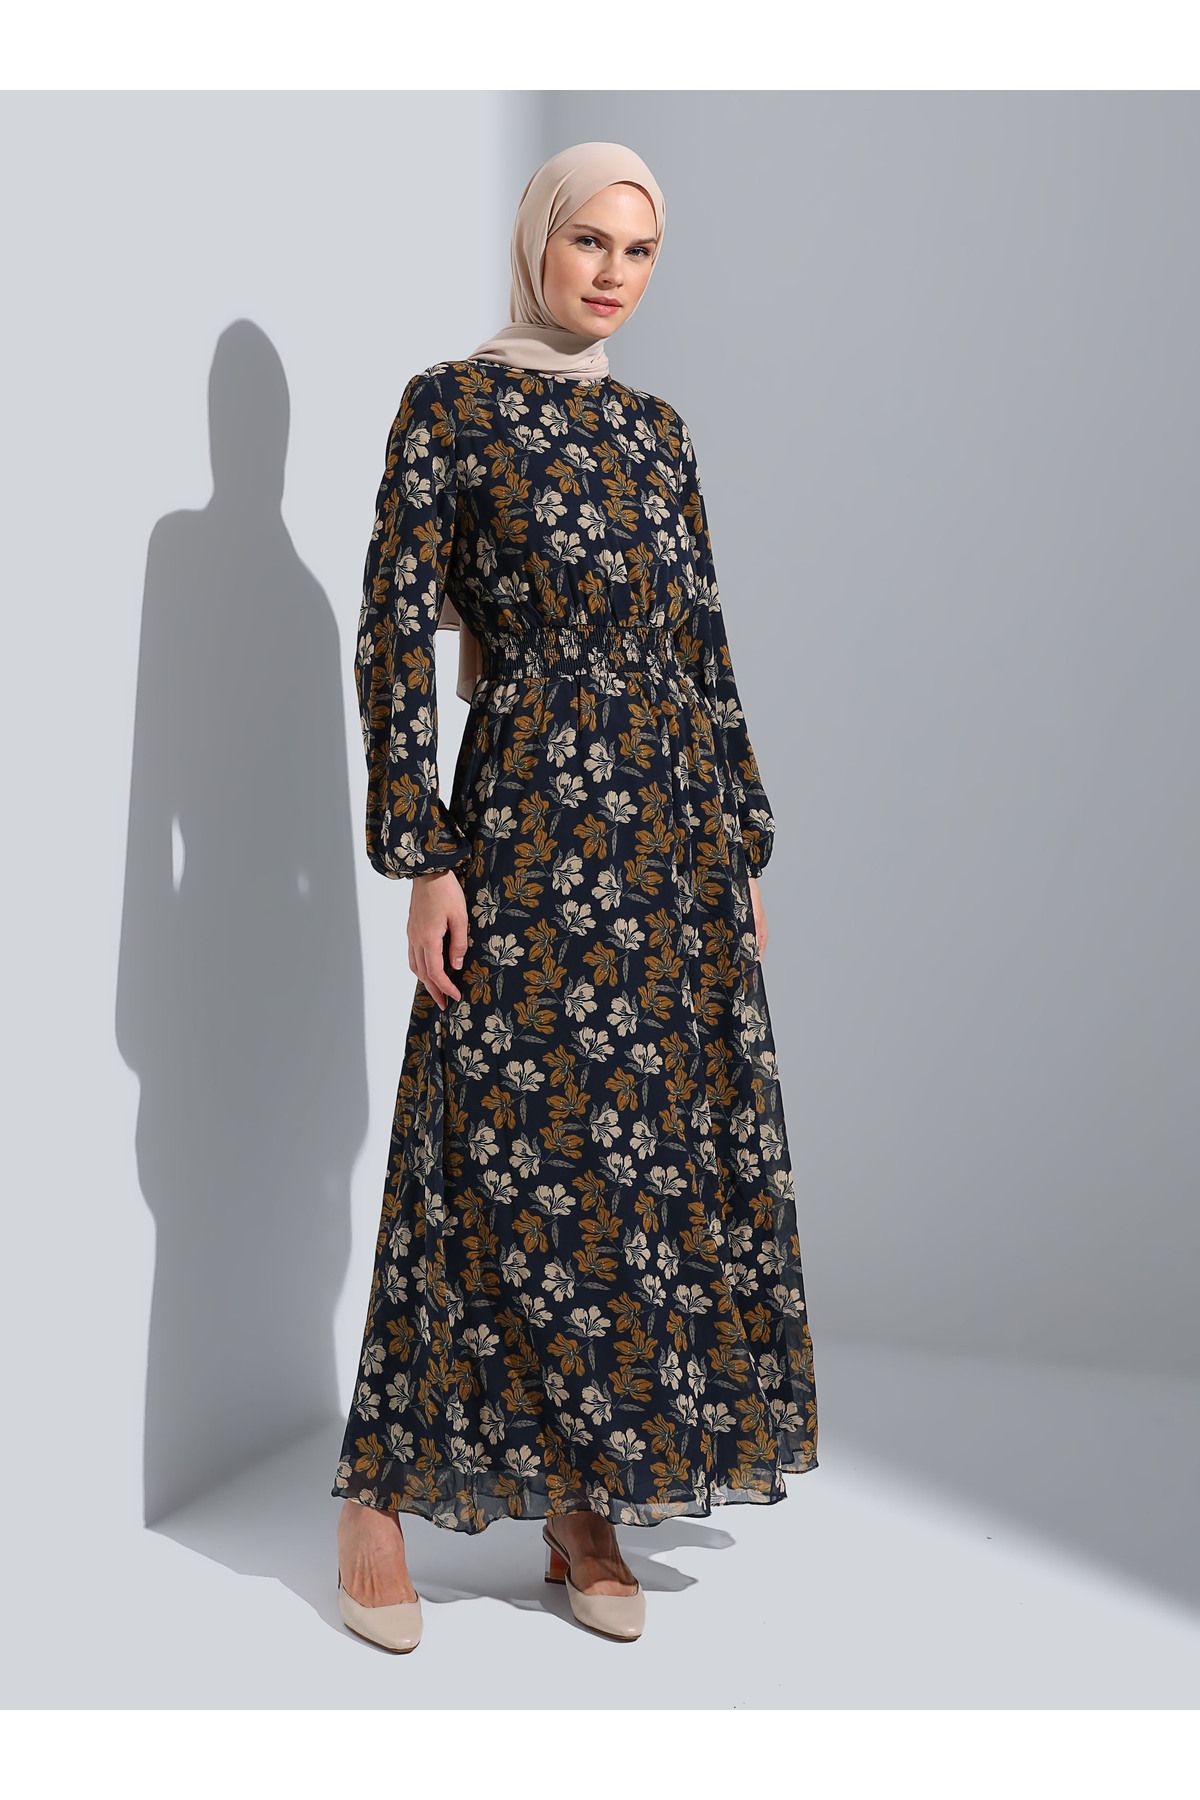 Refka Gipe Detaylı Çiçek Desen Şifon Tesettür Elbise - Lacivert - Refka